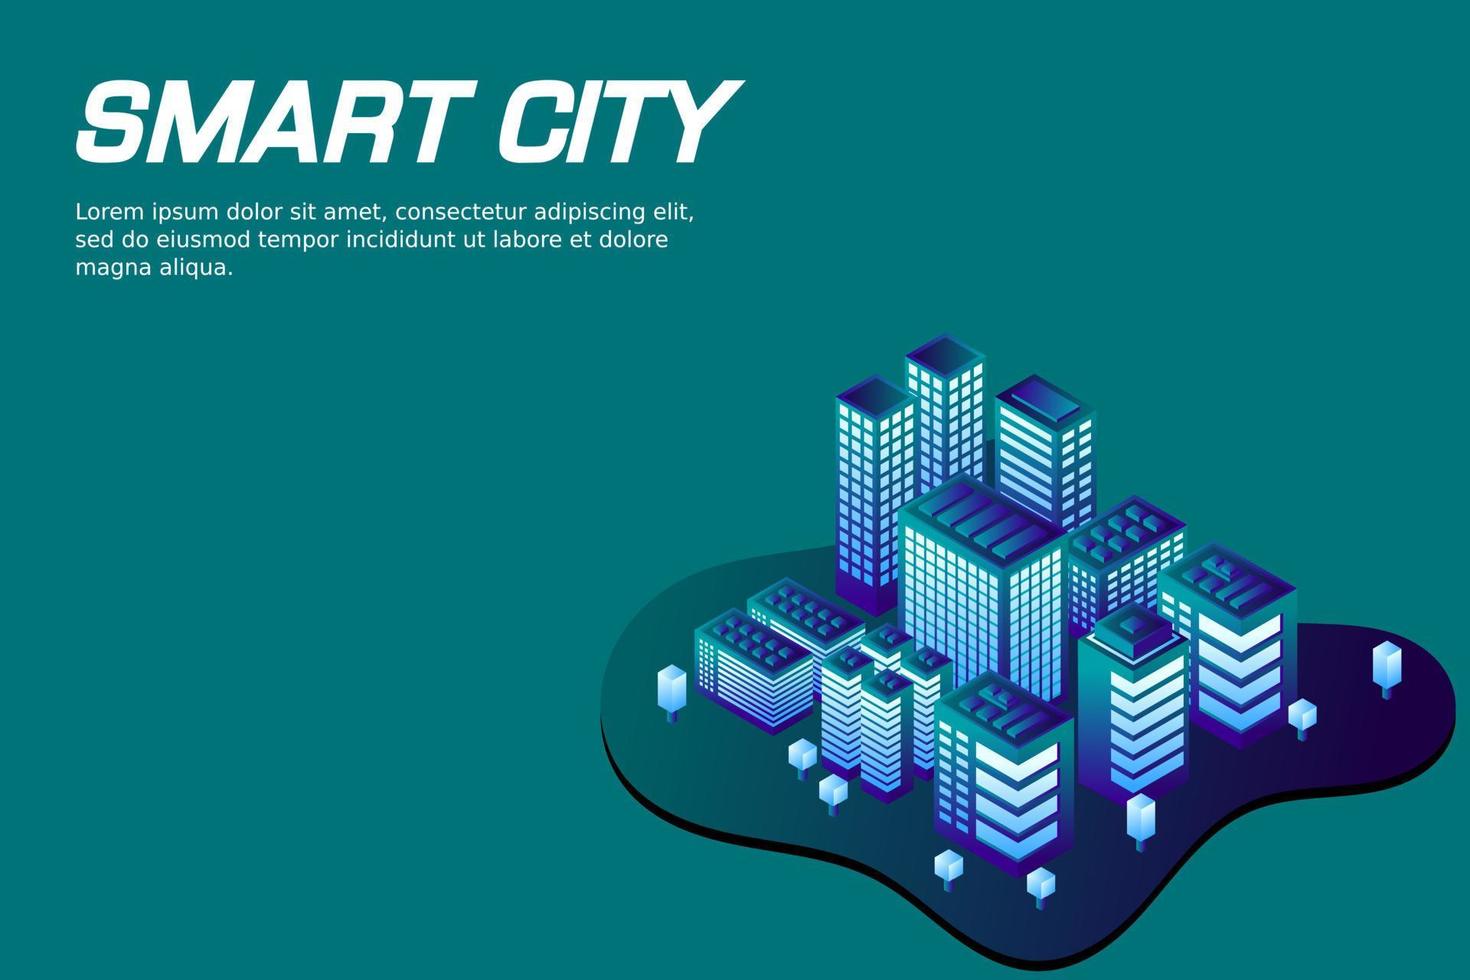 ciudad futura isométrica. concepto de la industria inmobiliaria y de la construcción vector